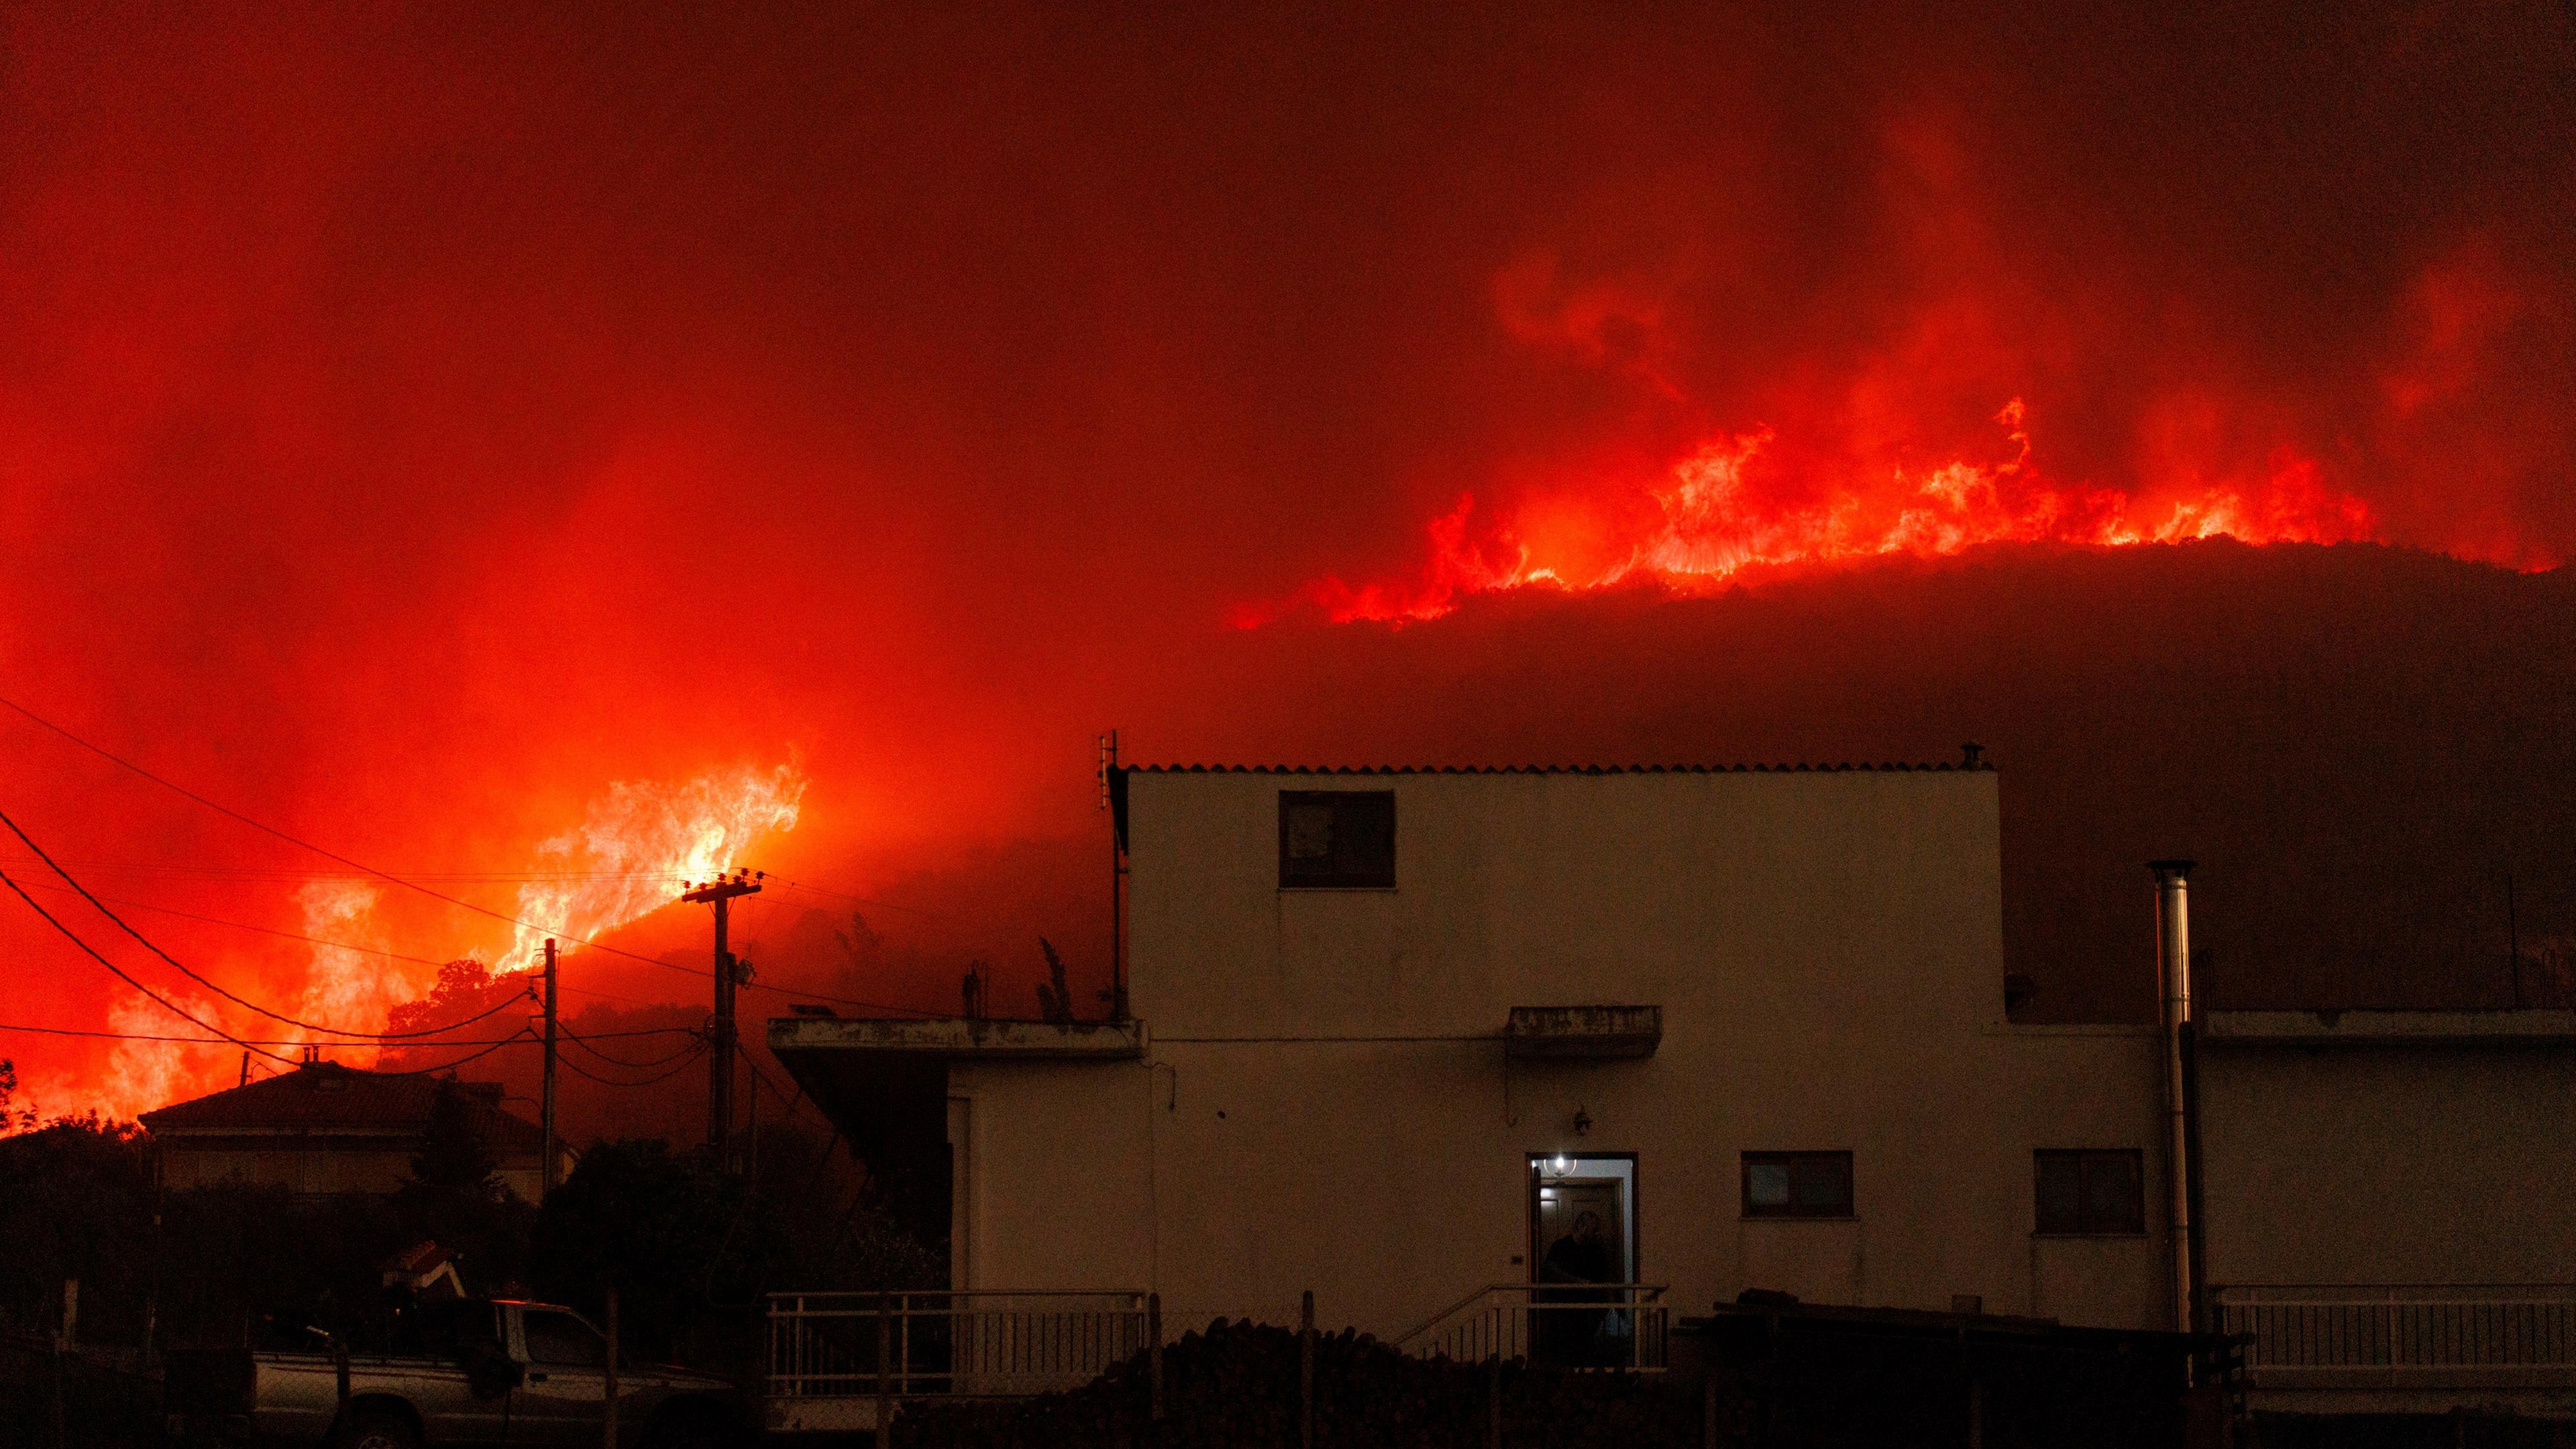 Griechenland, Avantas: Ein Waldbrand brennt in der Nähe eines Hauses im Dorf Avantas in der Nähe der Stadt Alexandroupolis in der nordöstlichen Region Evros.